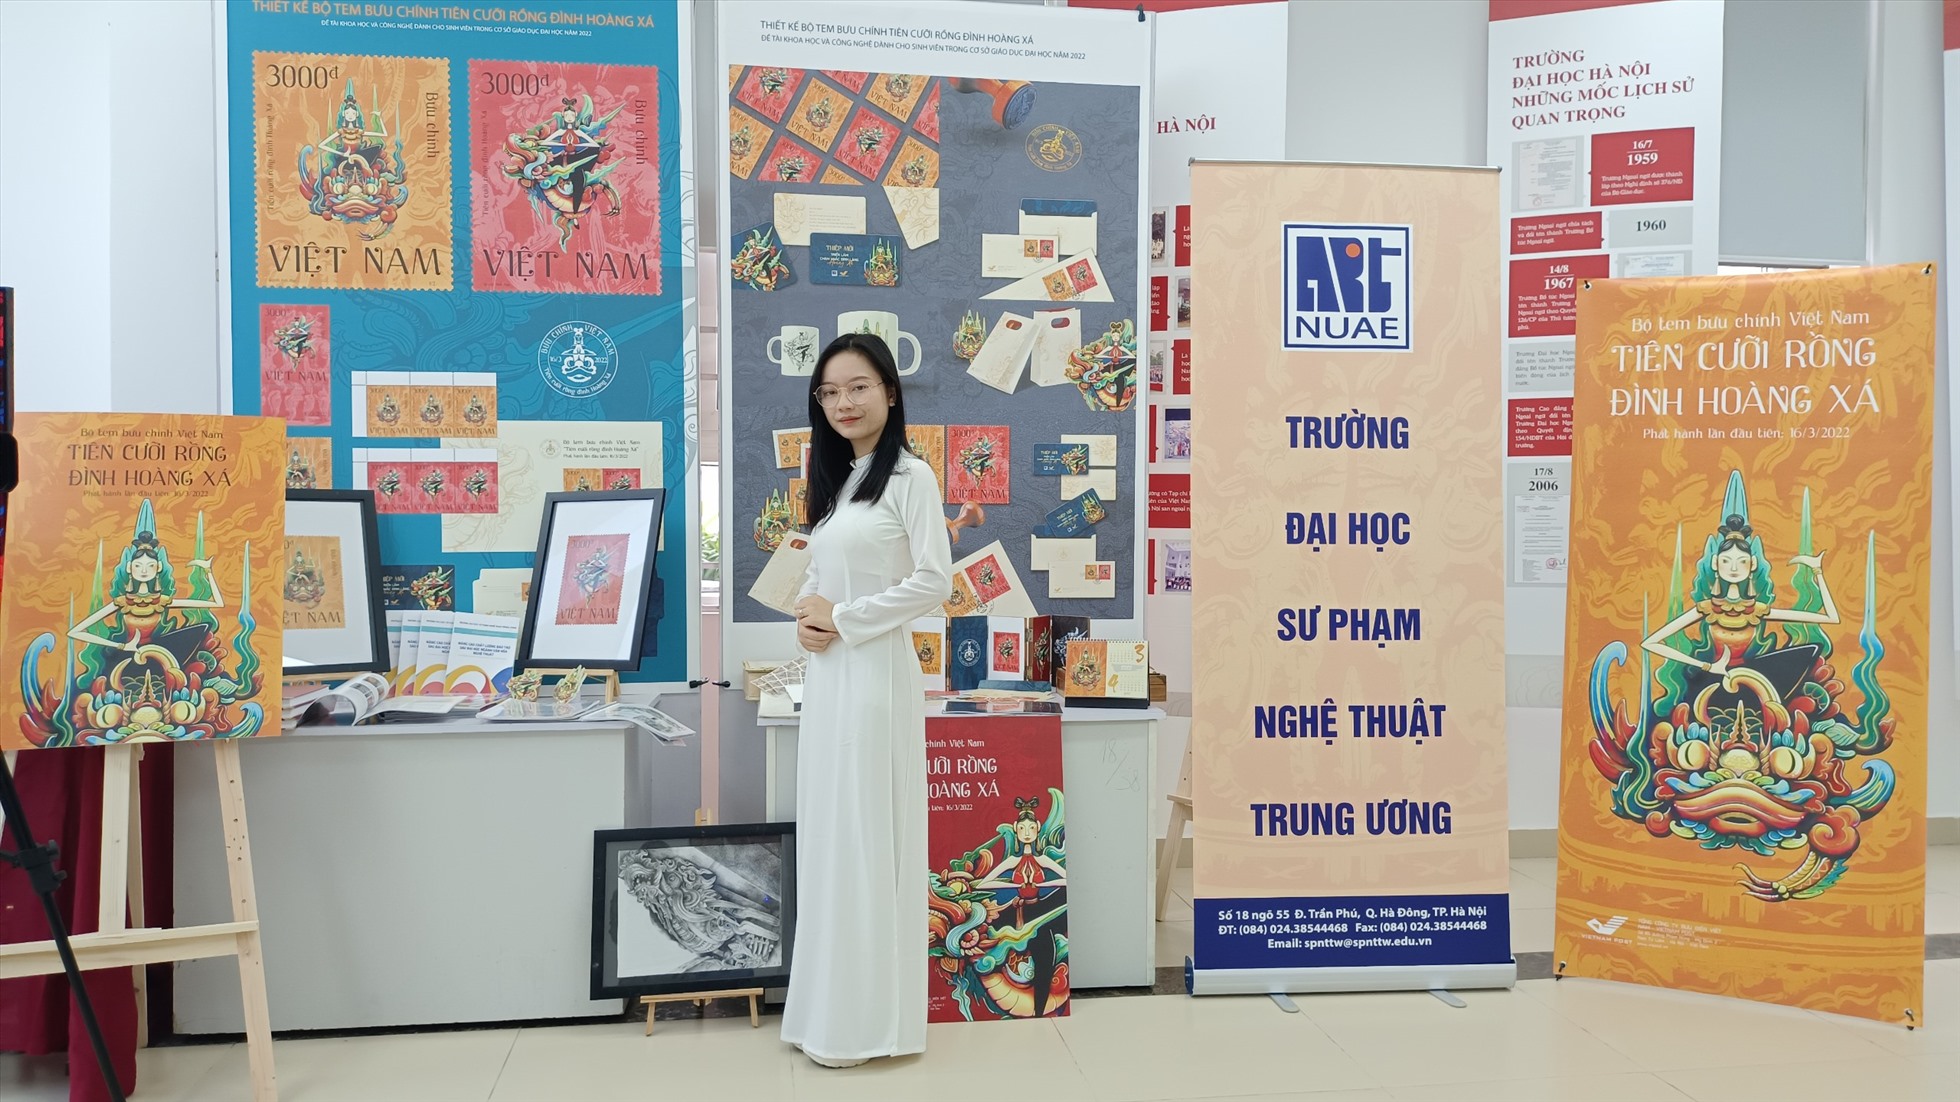 Mạc Thị Quỳnh Anh tại Giải thưởng Khoa học và Công nghệ dành cho sinh viên trong Cơ sở Giáo dục Đại học năm 2022. Ảnh: Nhân vật cung cấp